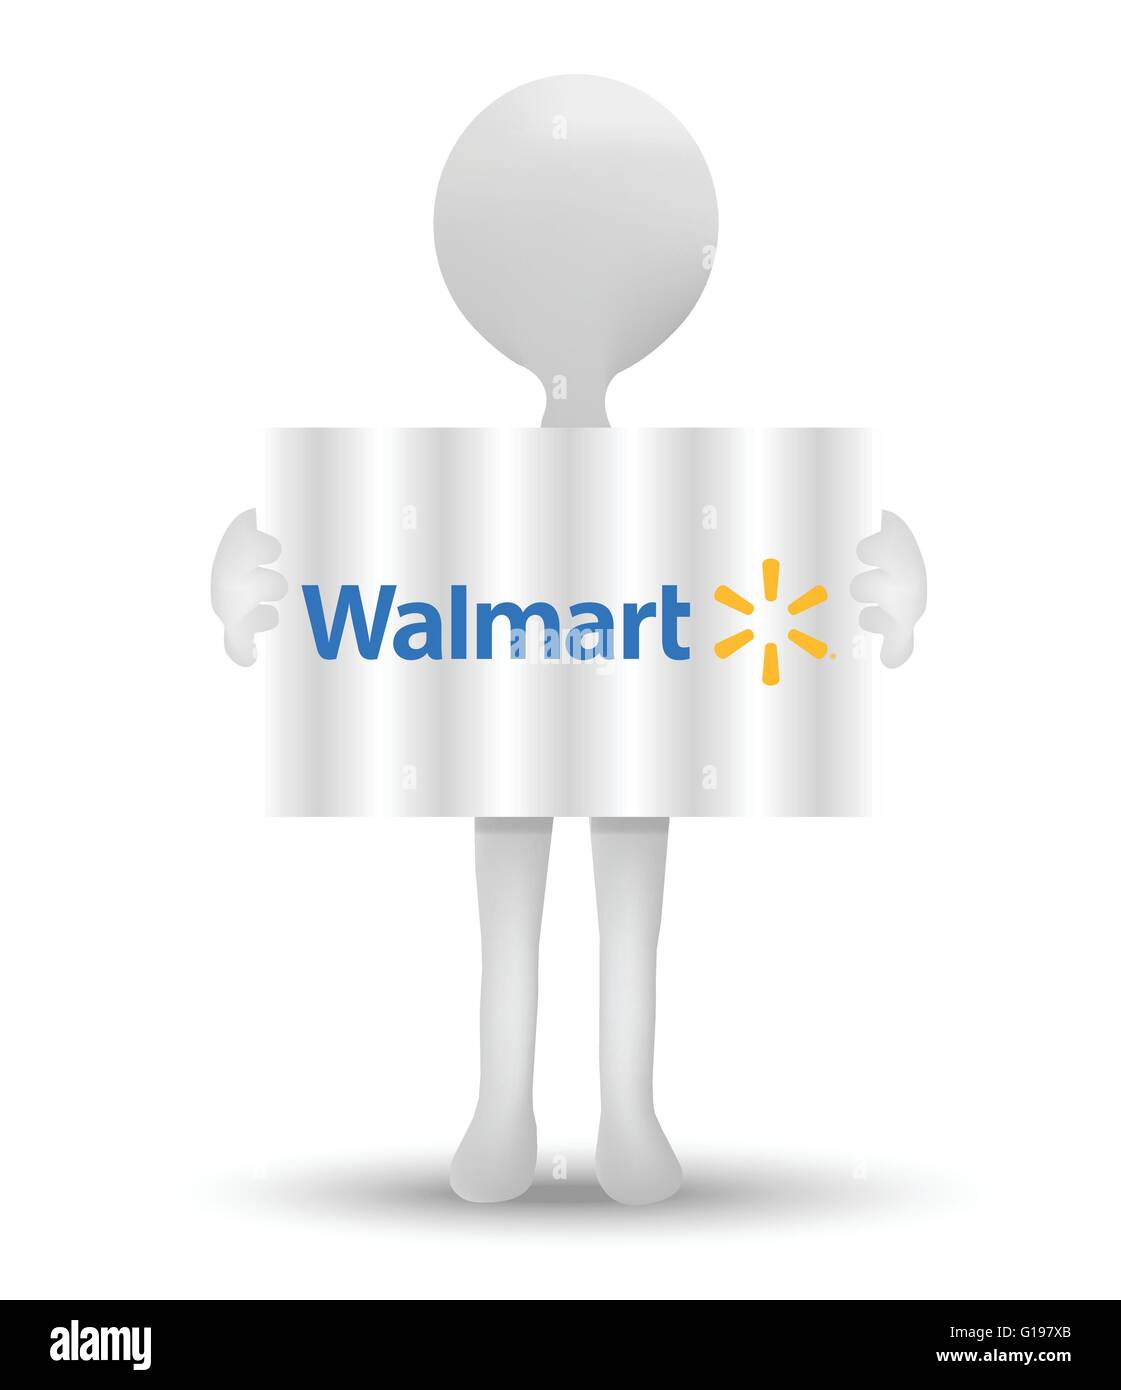 Logo de walmart Imágenes vectoriales de stock - Alamy